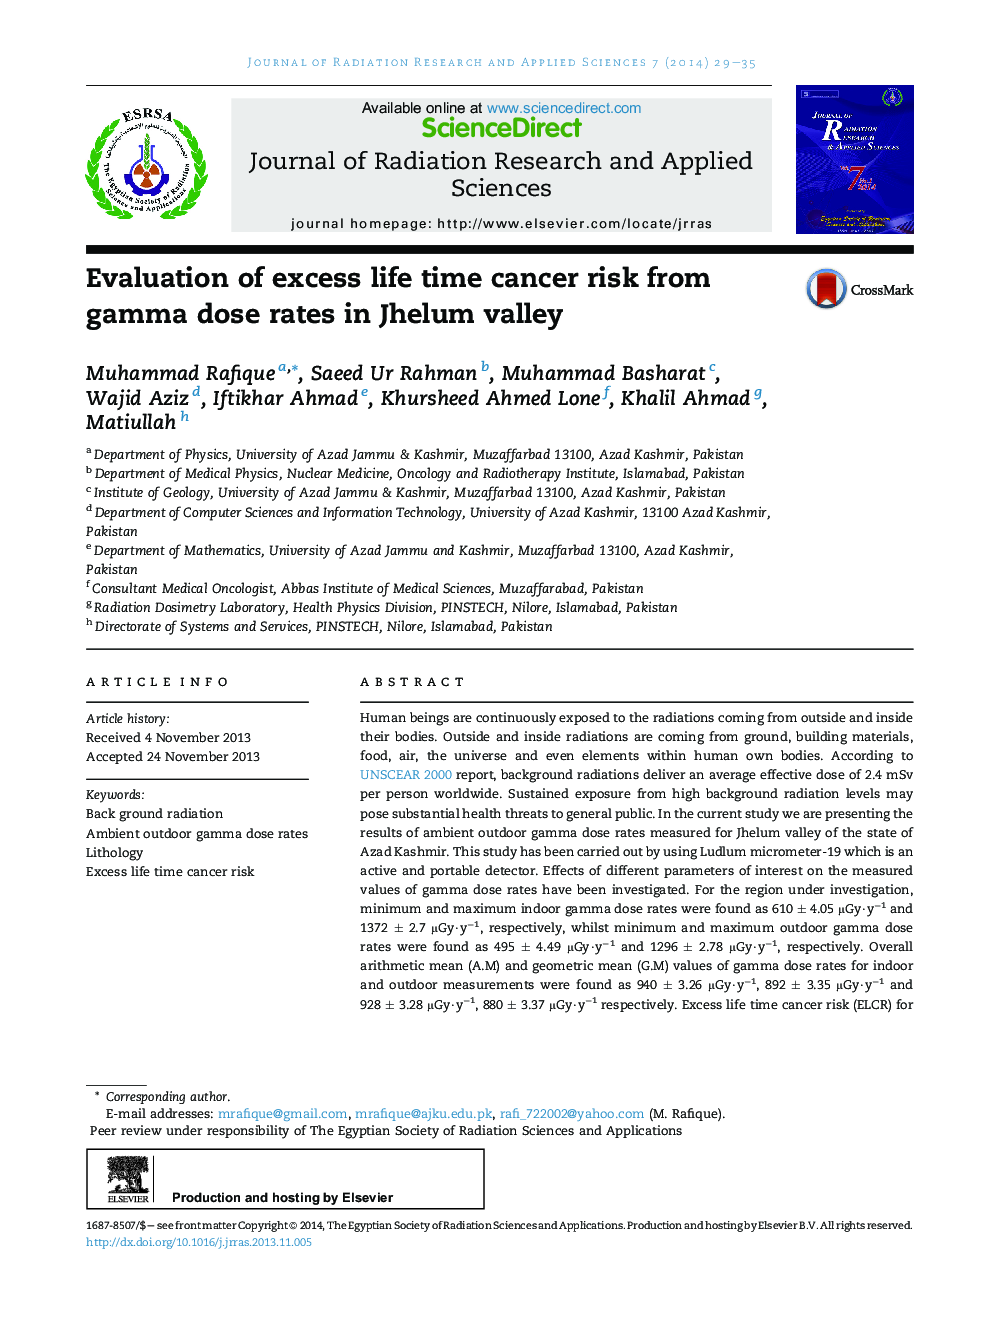 ارزیابی خطر ابتلا به سرطان بیش از حد از میزان دوز گاما در دره یلموم 